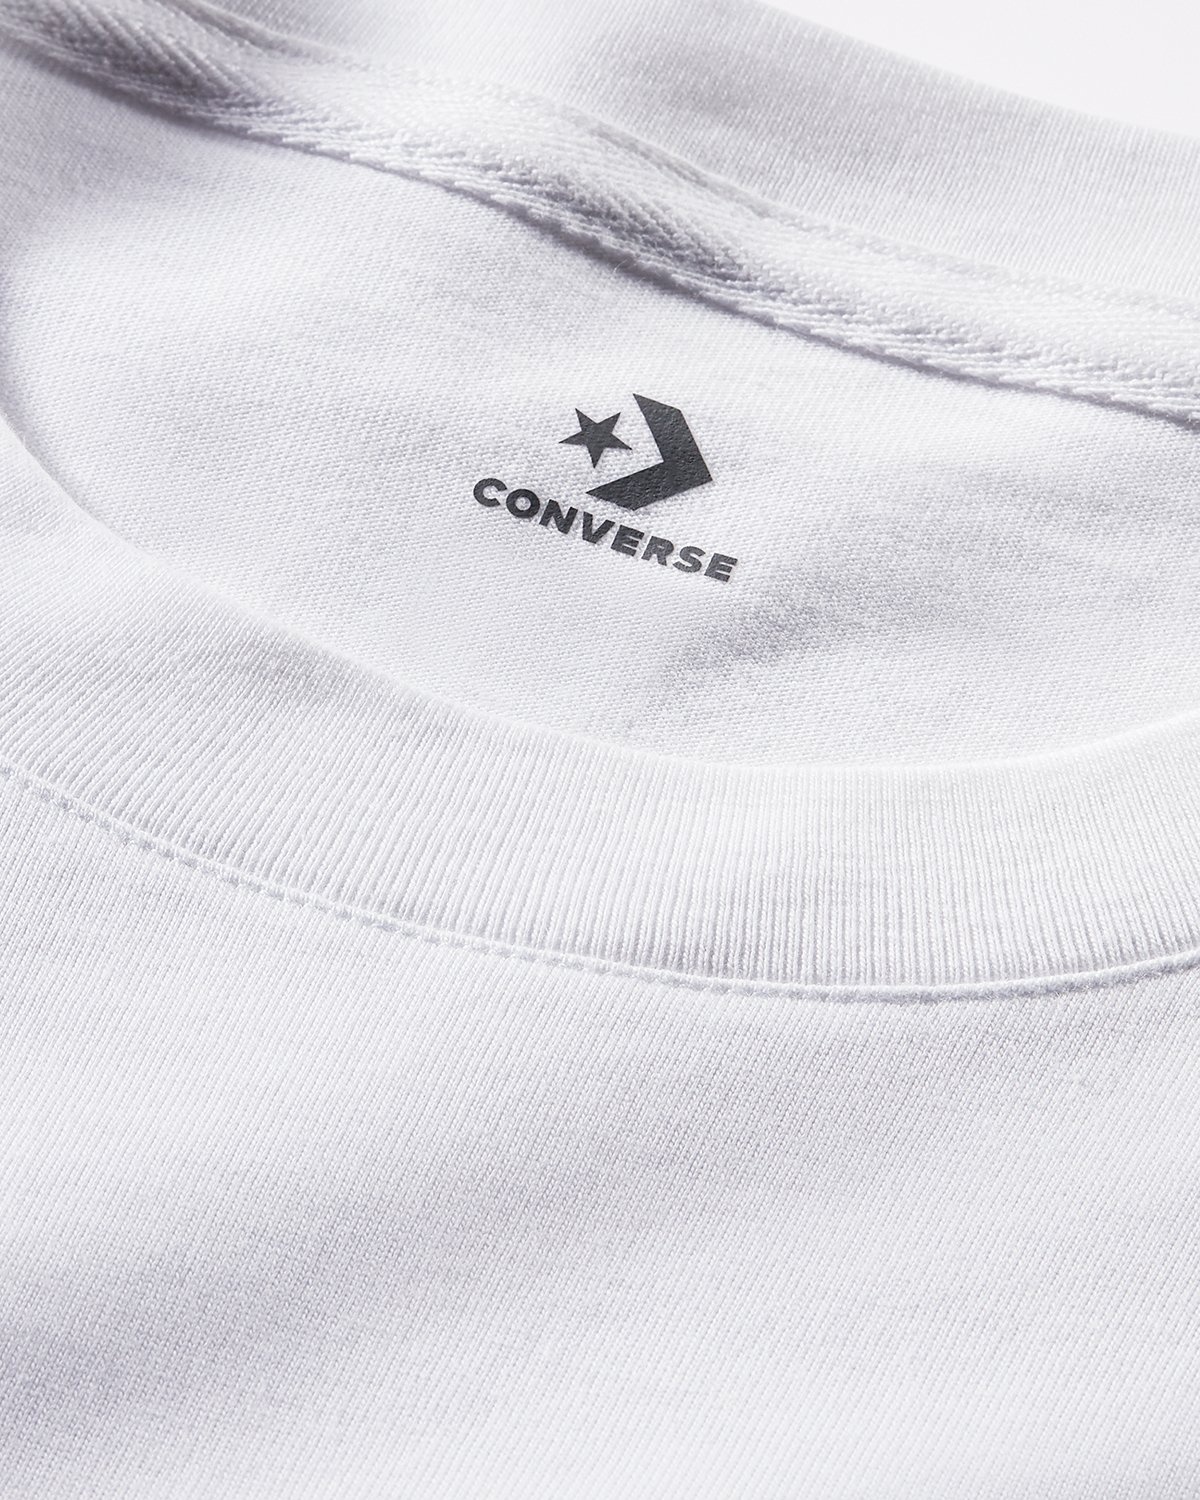 Converse x Joshua Vides – Long Sleeve Pocket Tee White - Longsleeves - White - Image 6